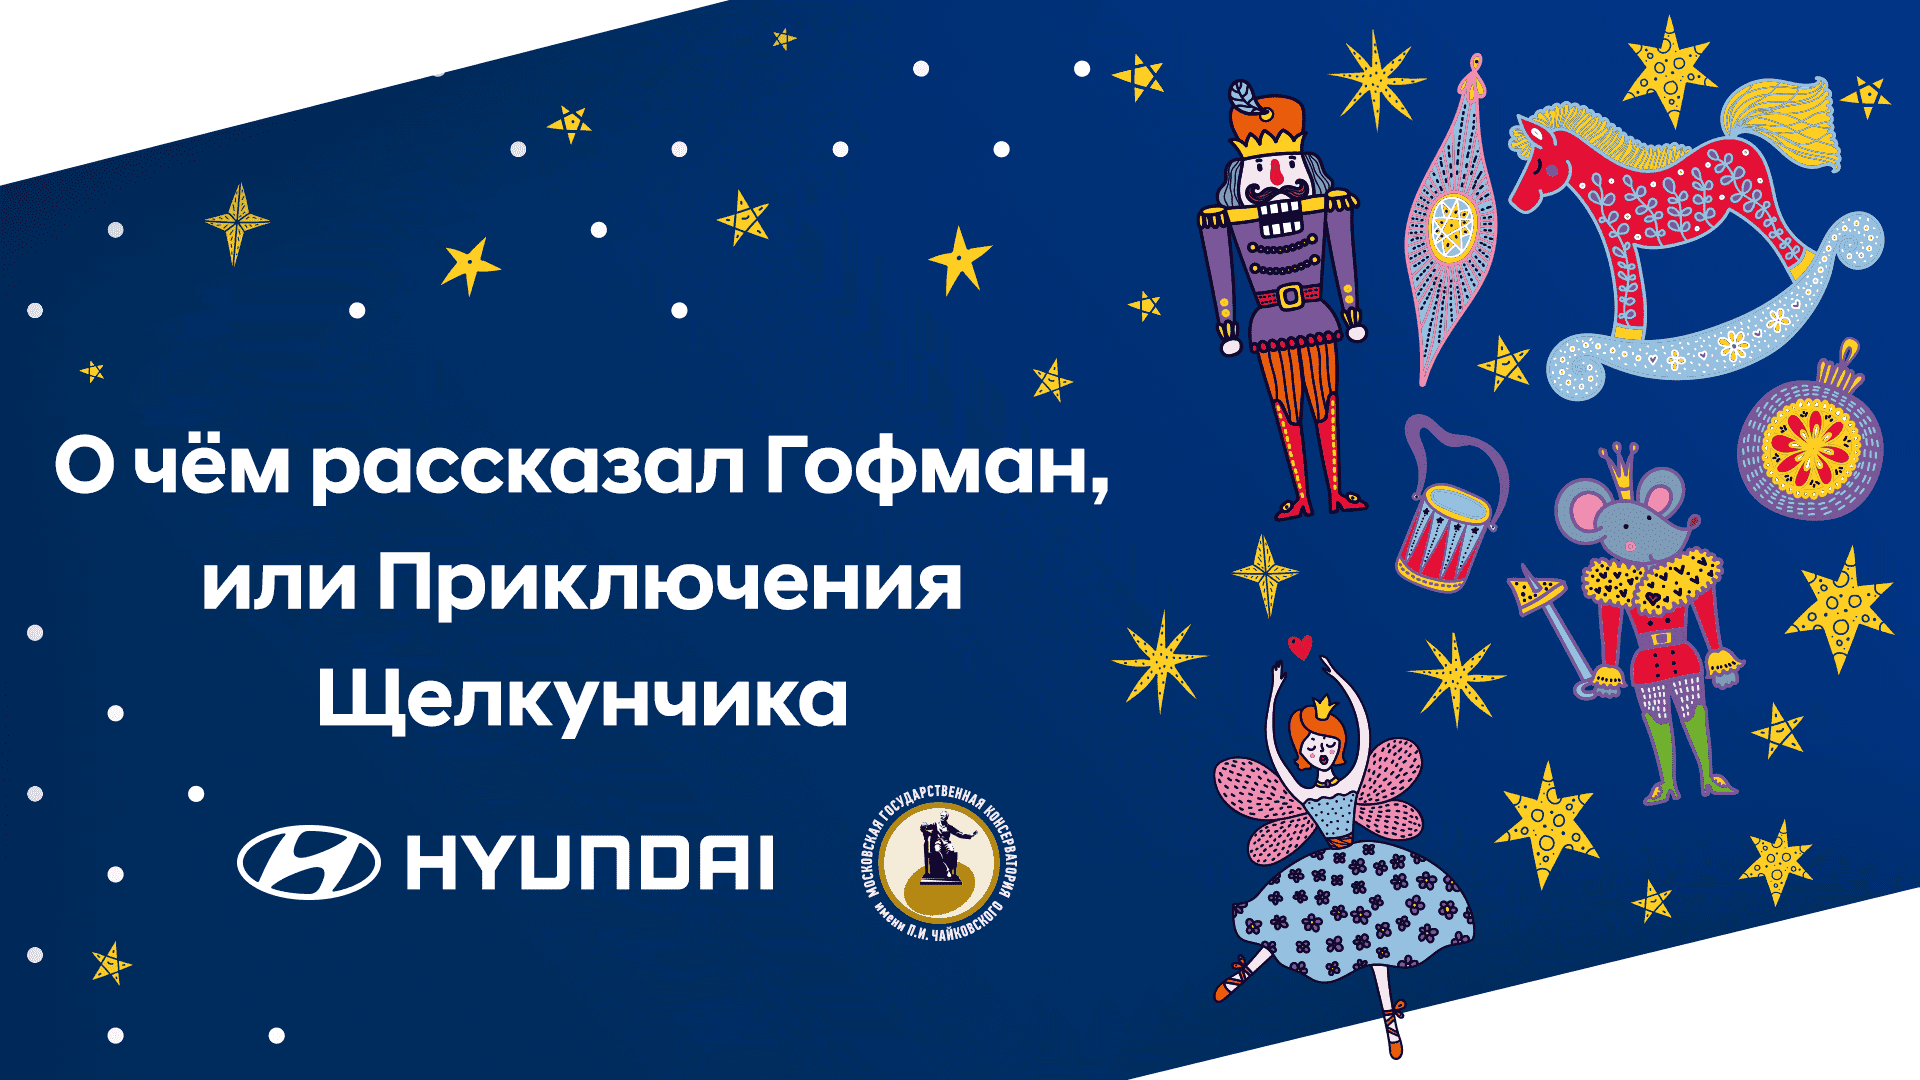 Hyundai и Московская консерватория выпускают новогодний онлайн-концерт для детей «Приключения Щелкунчика»